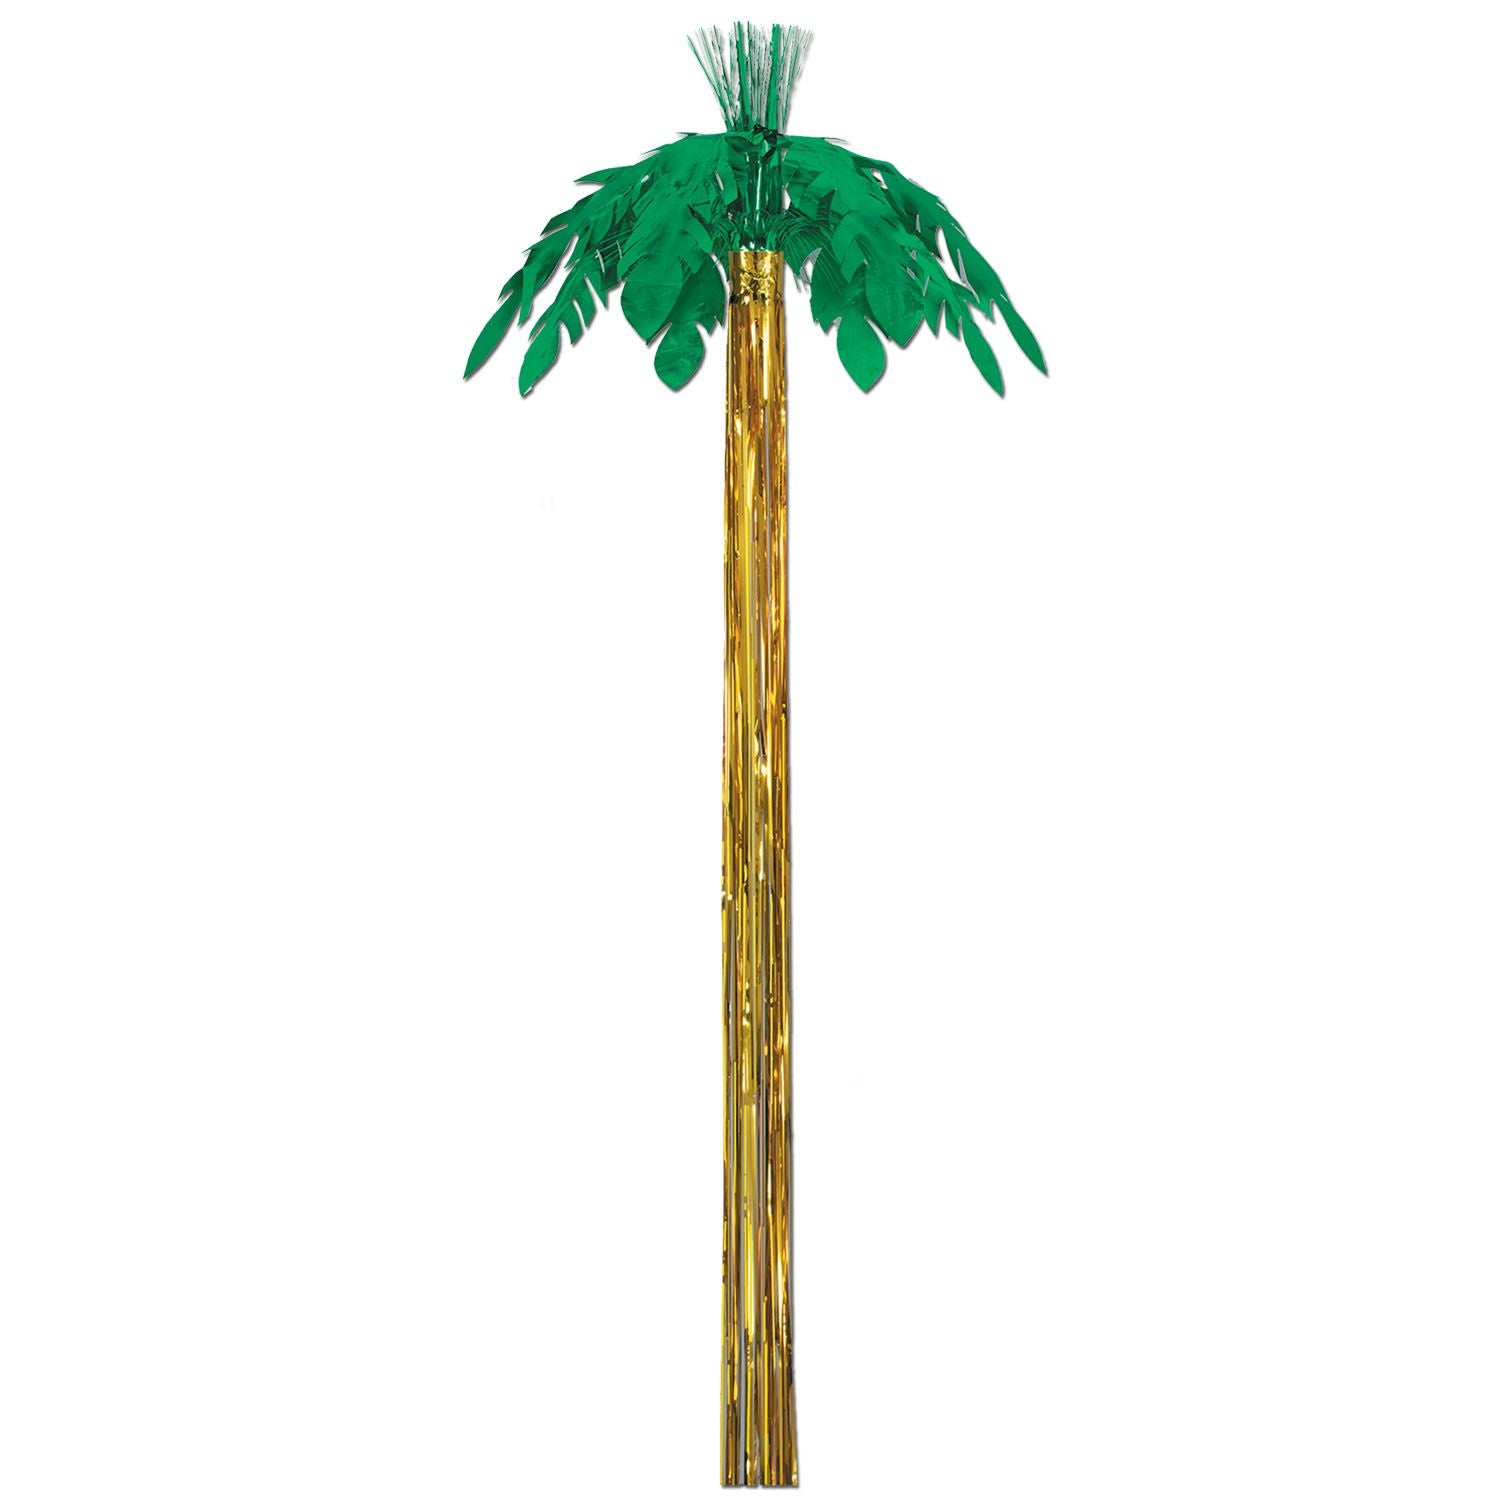 Metallic Hanging Palm Tree